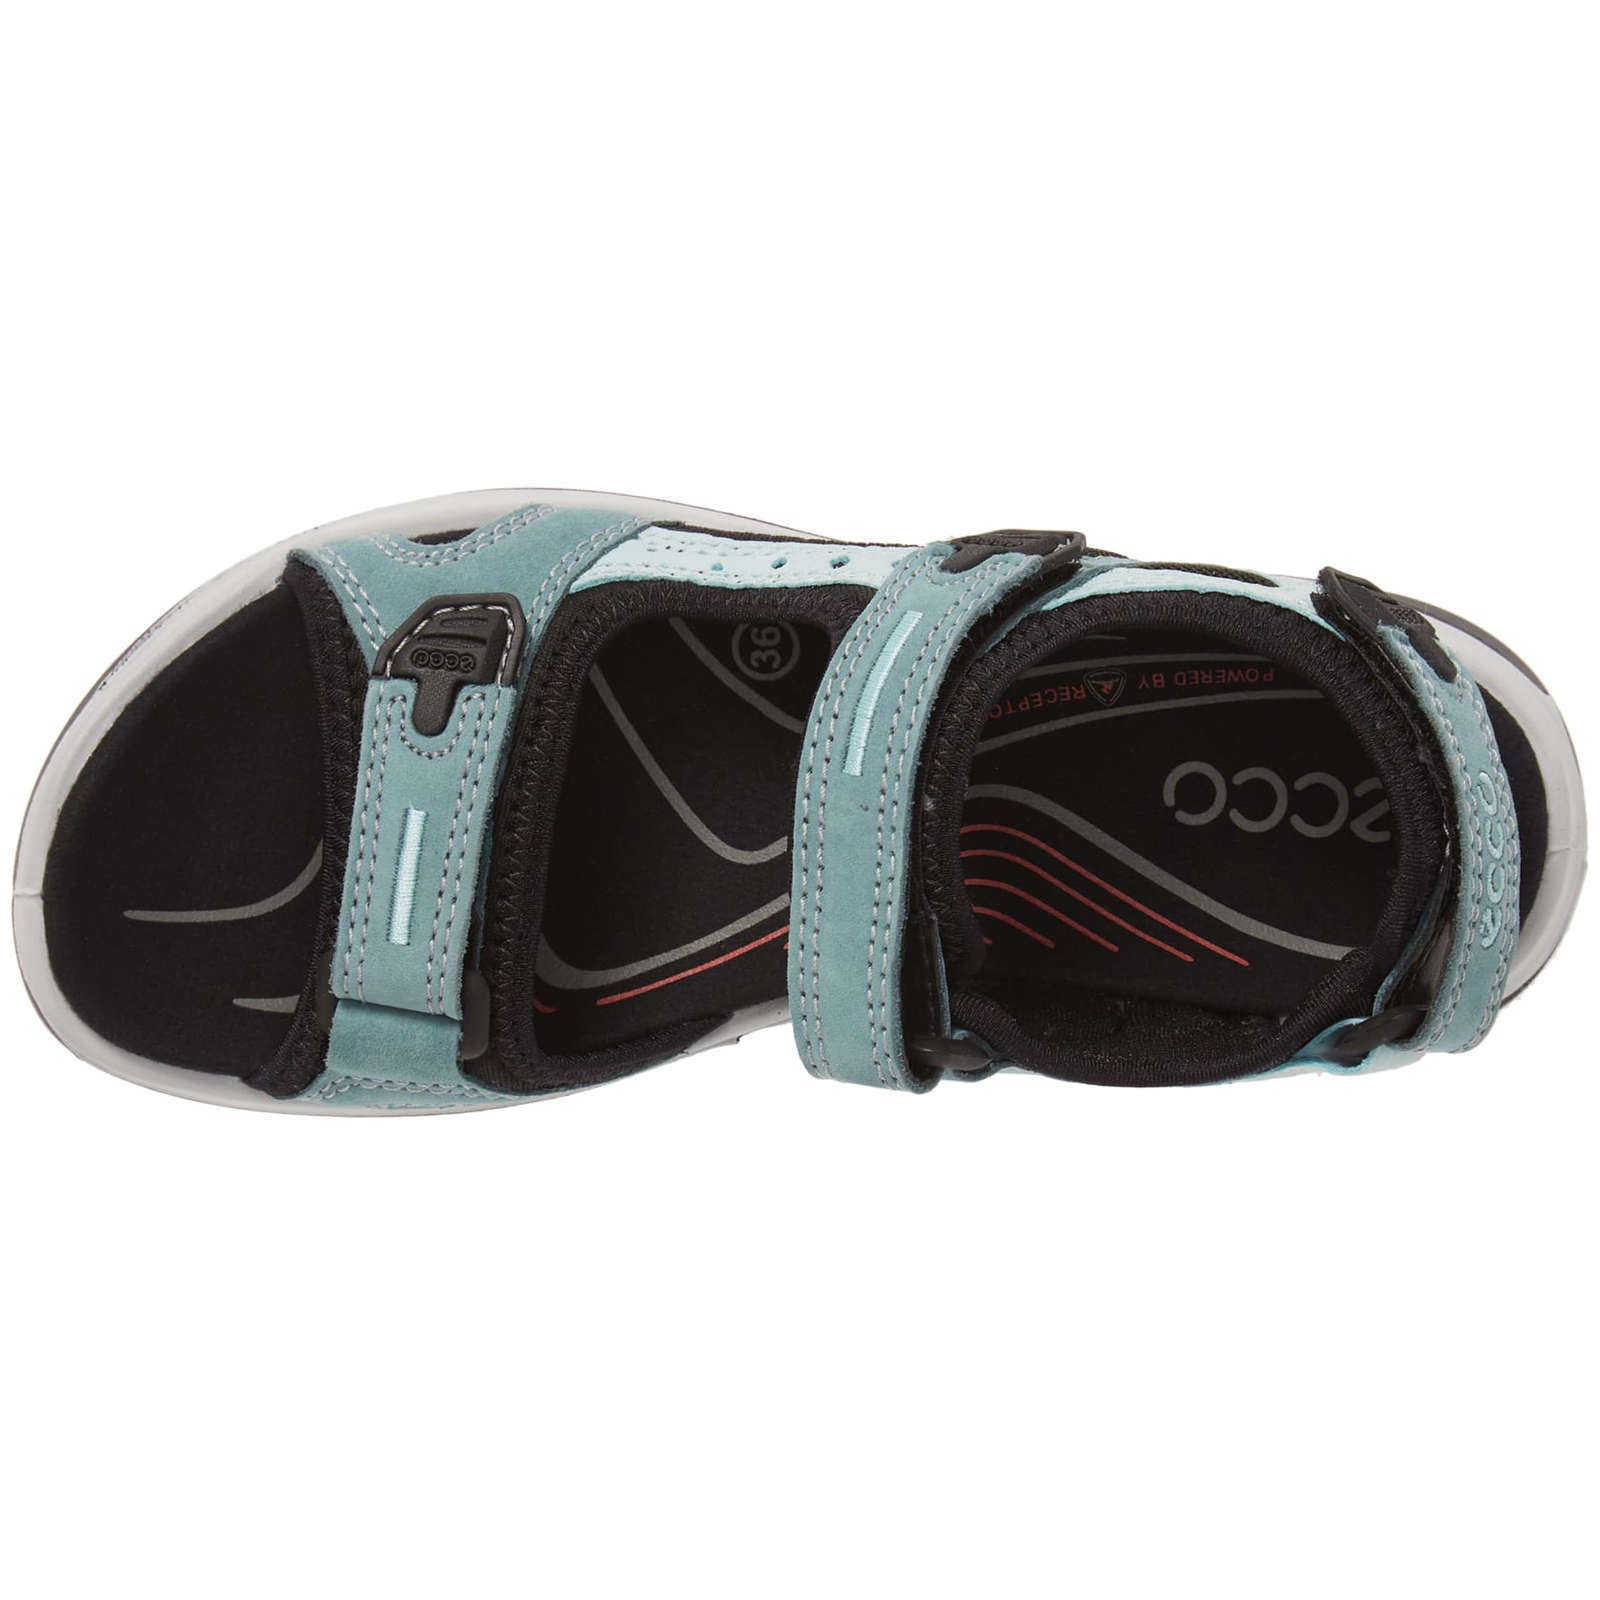 Ecco Offroad Nubuck Womens Sandals#color_trellis eggshell blue